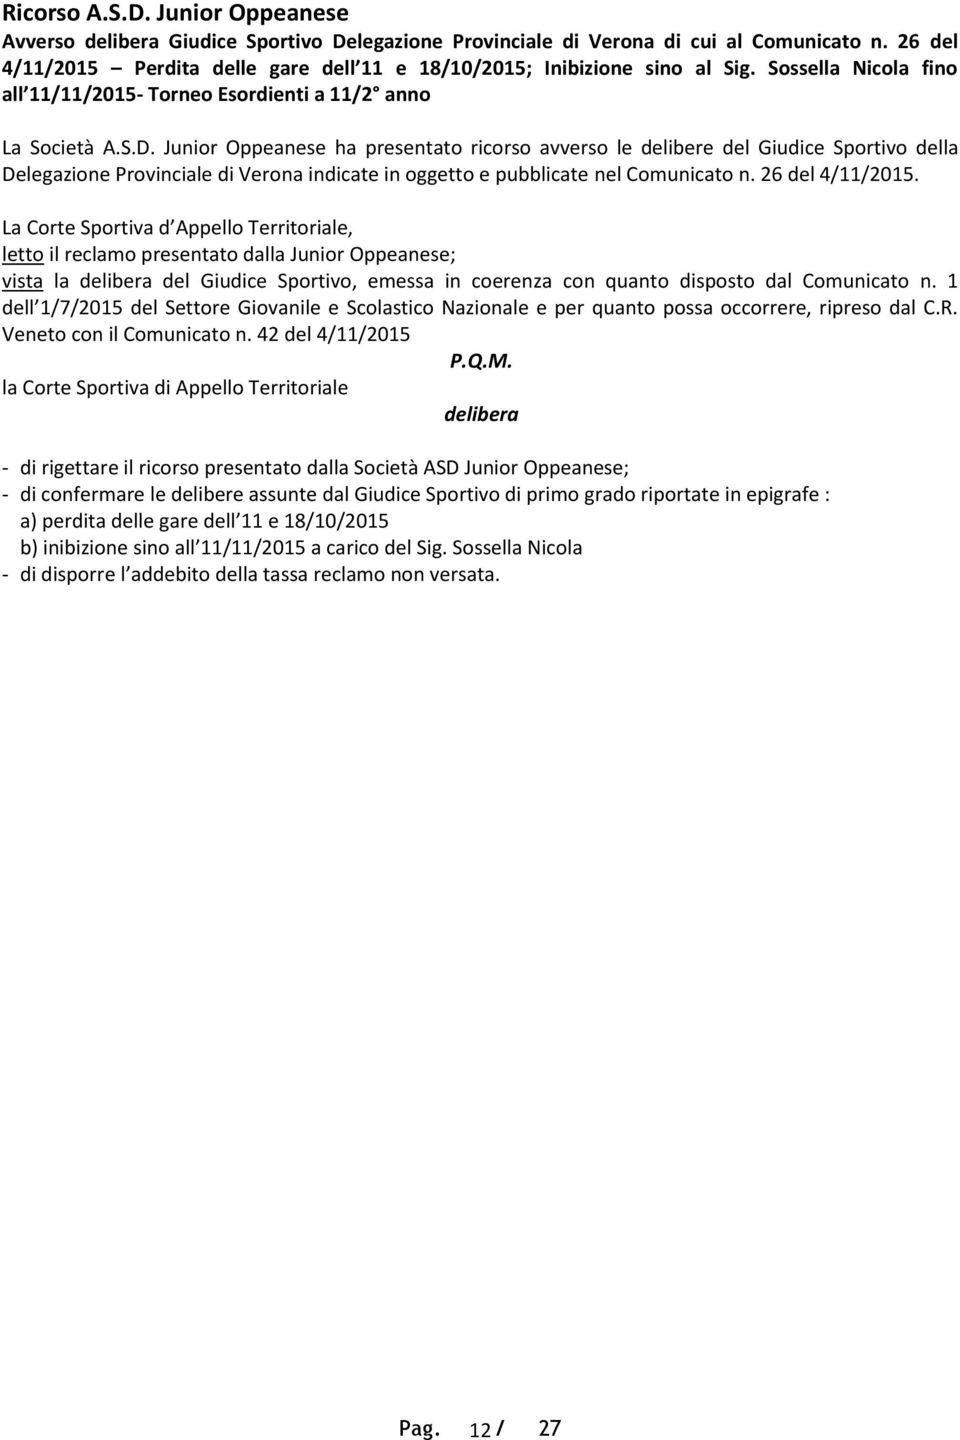 Junior Oppeanese ha presentato ricorso avverso le delibere del Giudice Sportivo della Delegazione Provinciale di Verona indicate in oggetto e pubblicate nel Comunicato n. 26 del 4/11/2015.